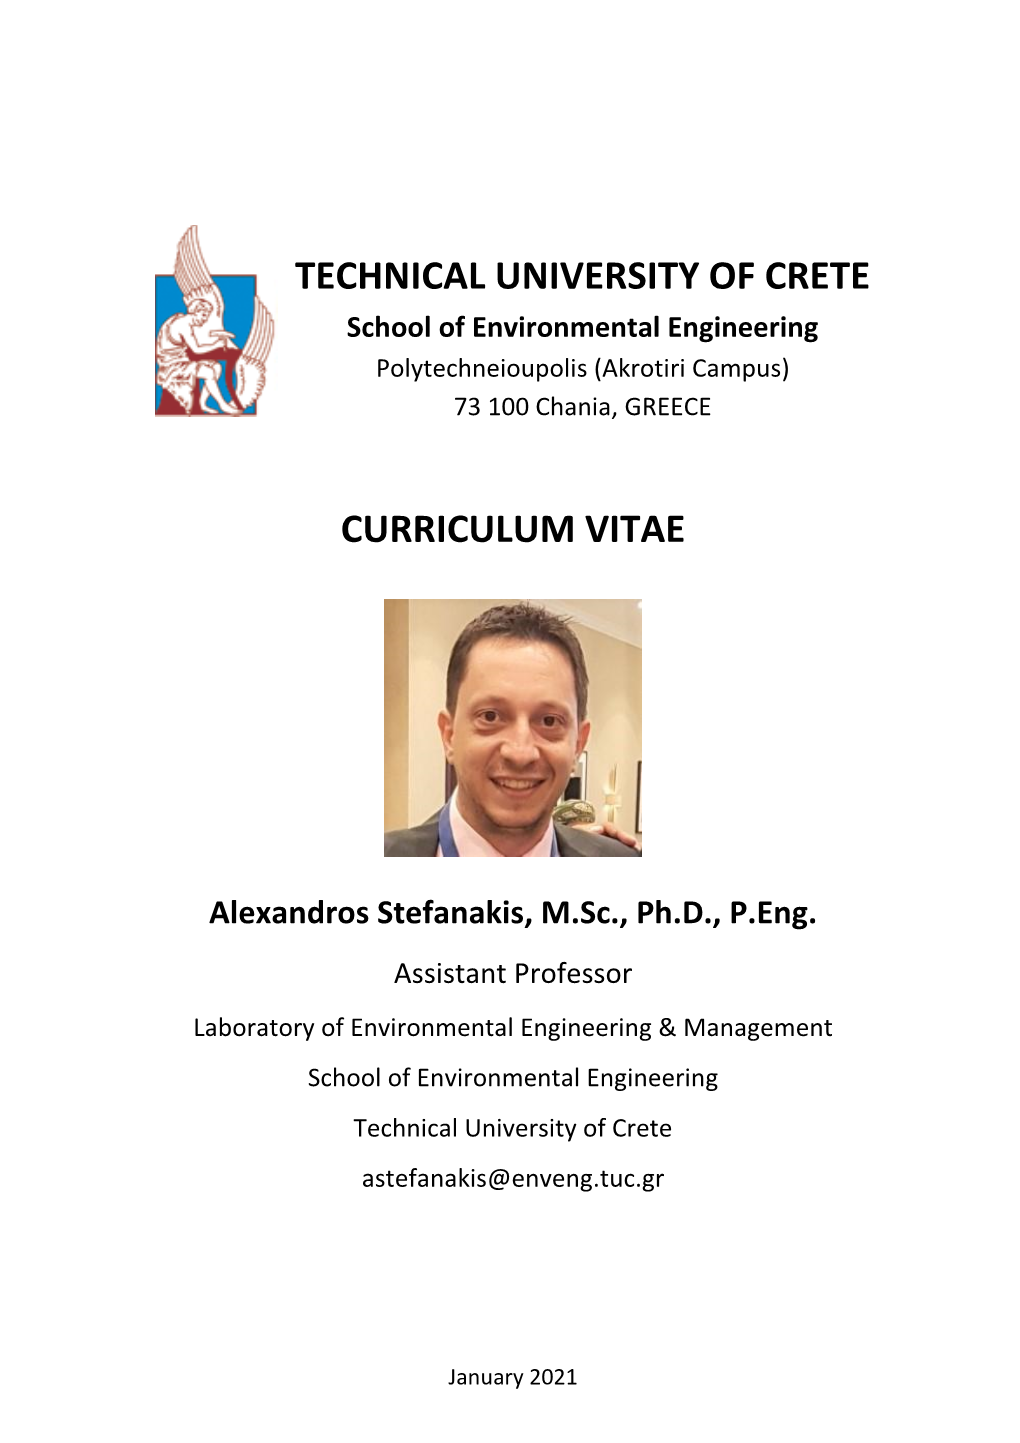 Technical University of Crete Curriculum Vitae